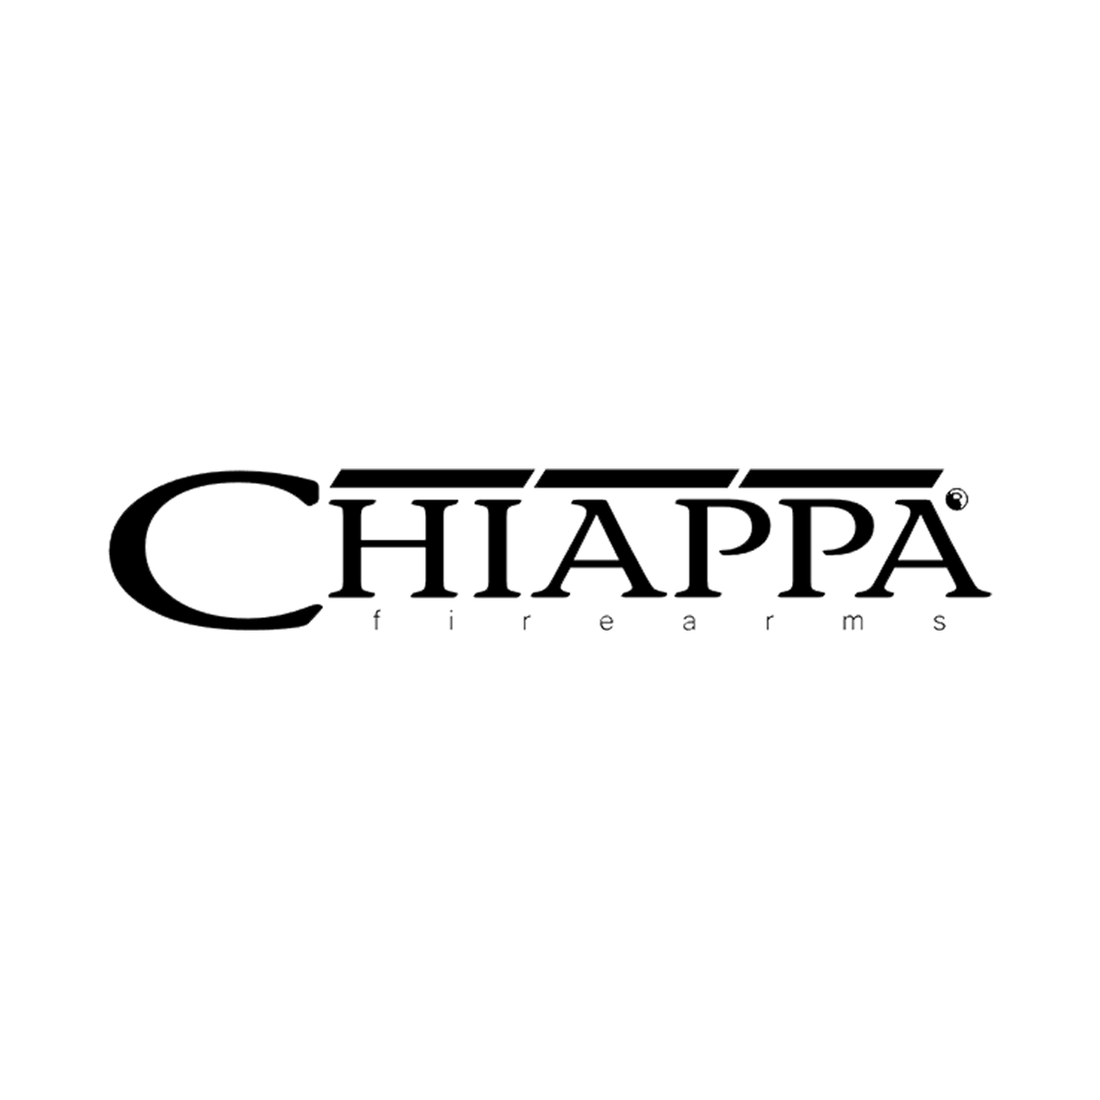 Chiappa IWB Holsters